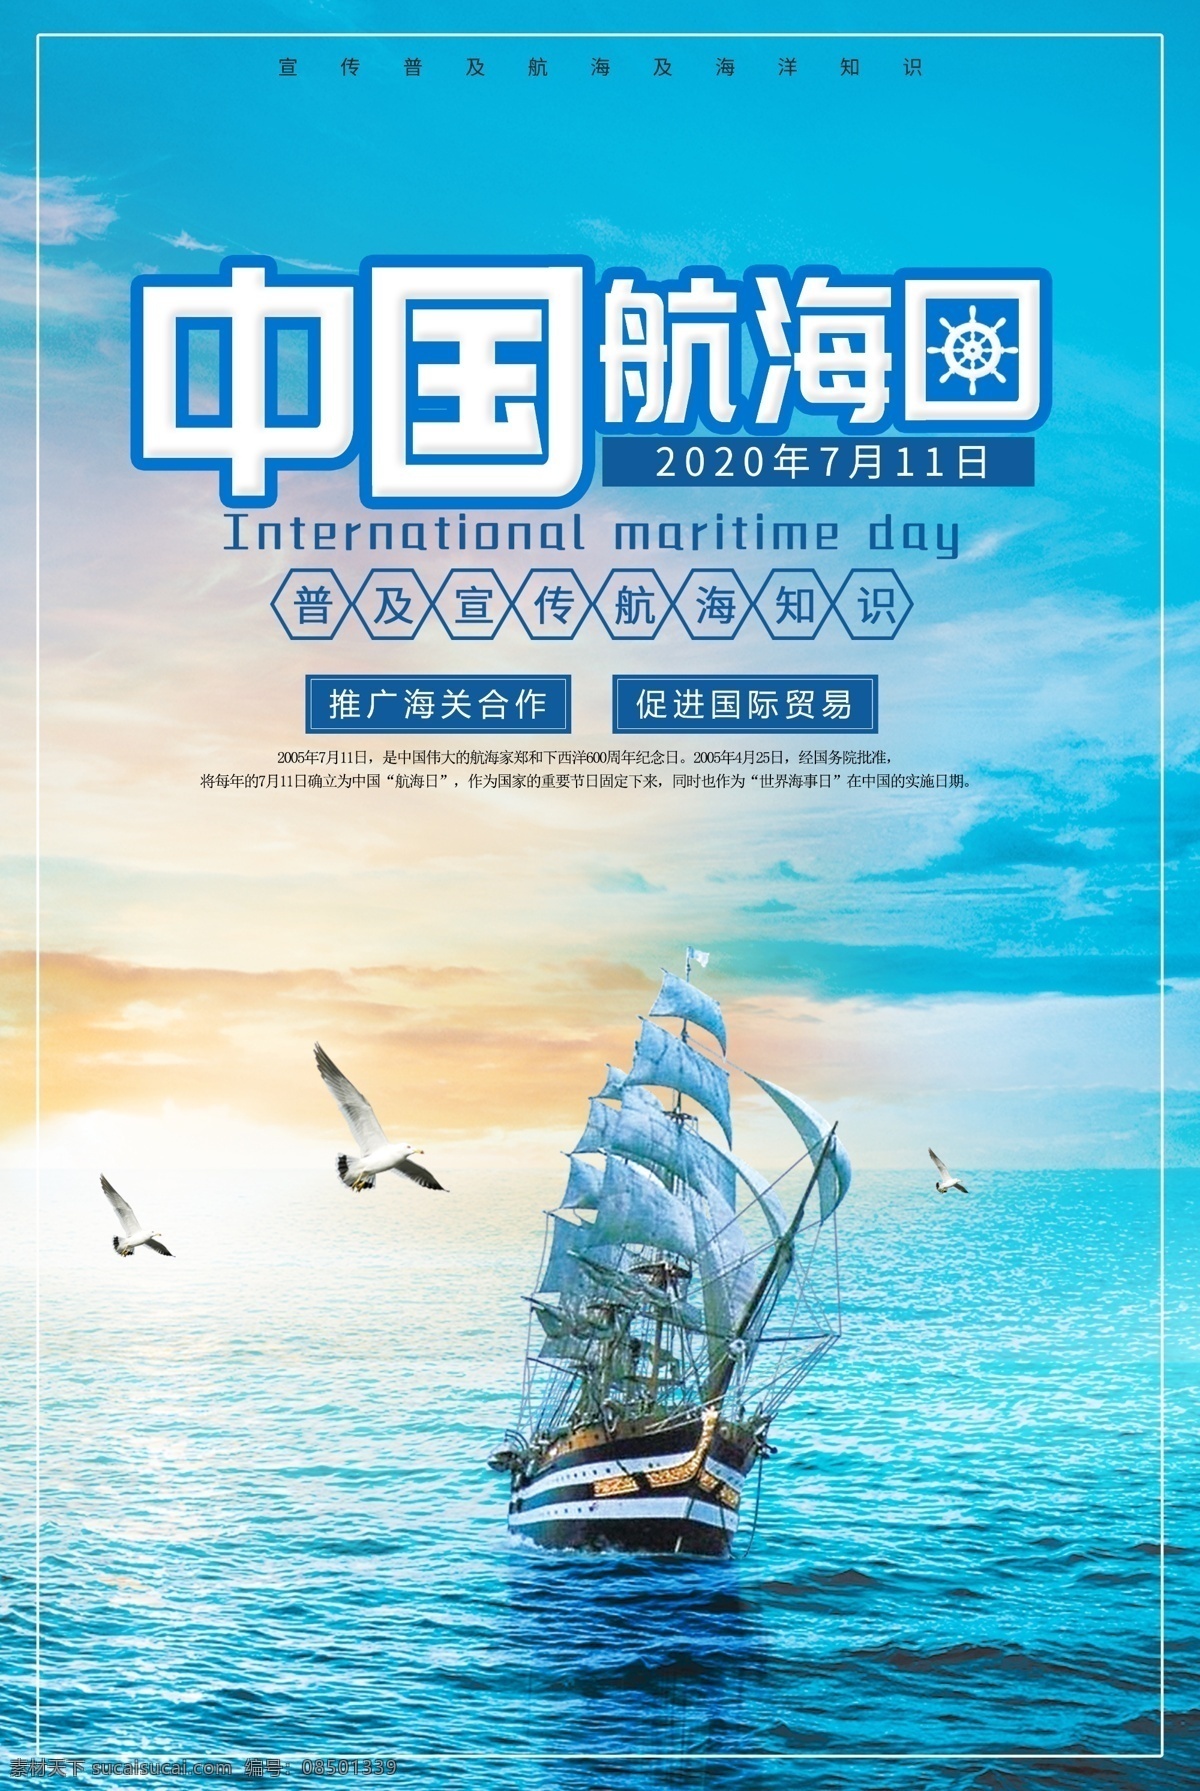 国际航海日 国际 航海日 2020 2020年 中国航海日 国家航海日 航海 海报 宣传海报 中国海洋日 海洋环境 海洋环境保护 海洋日 世界海洋日 海洋日海报 海洋日广告 海洋生物